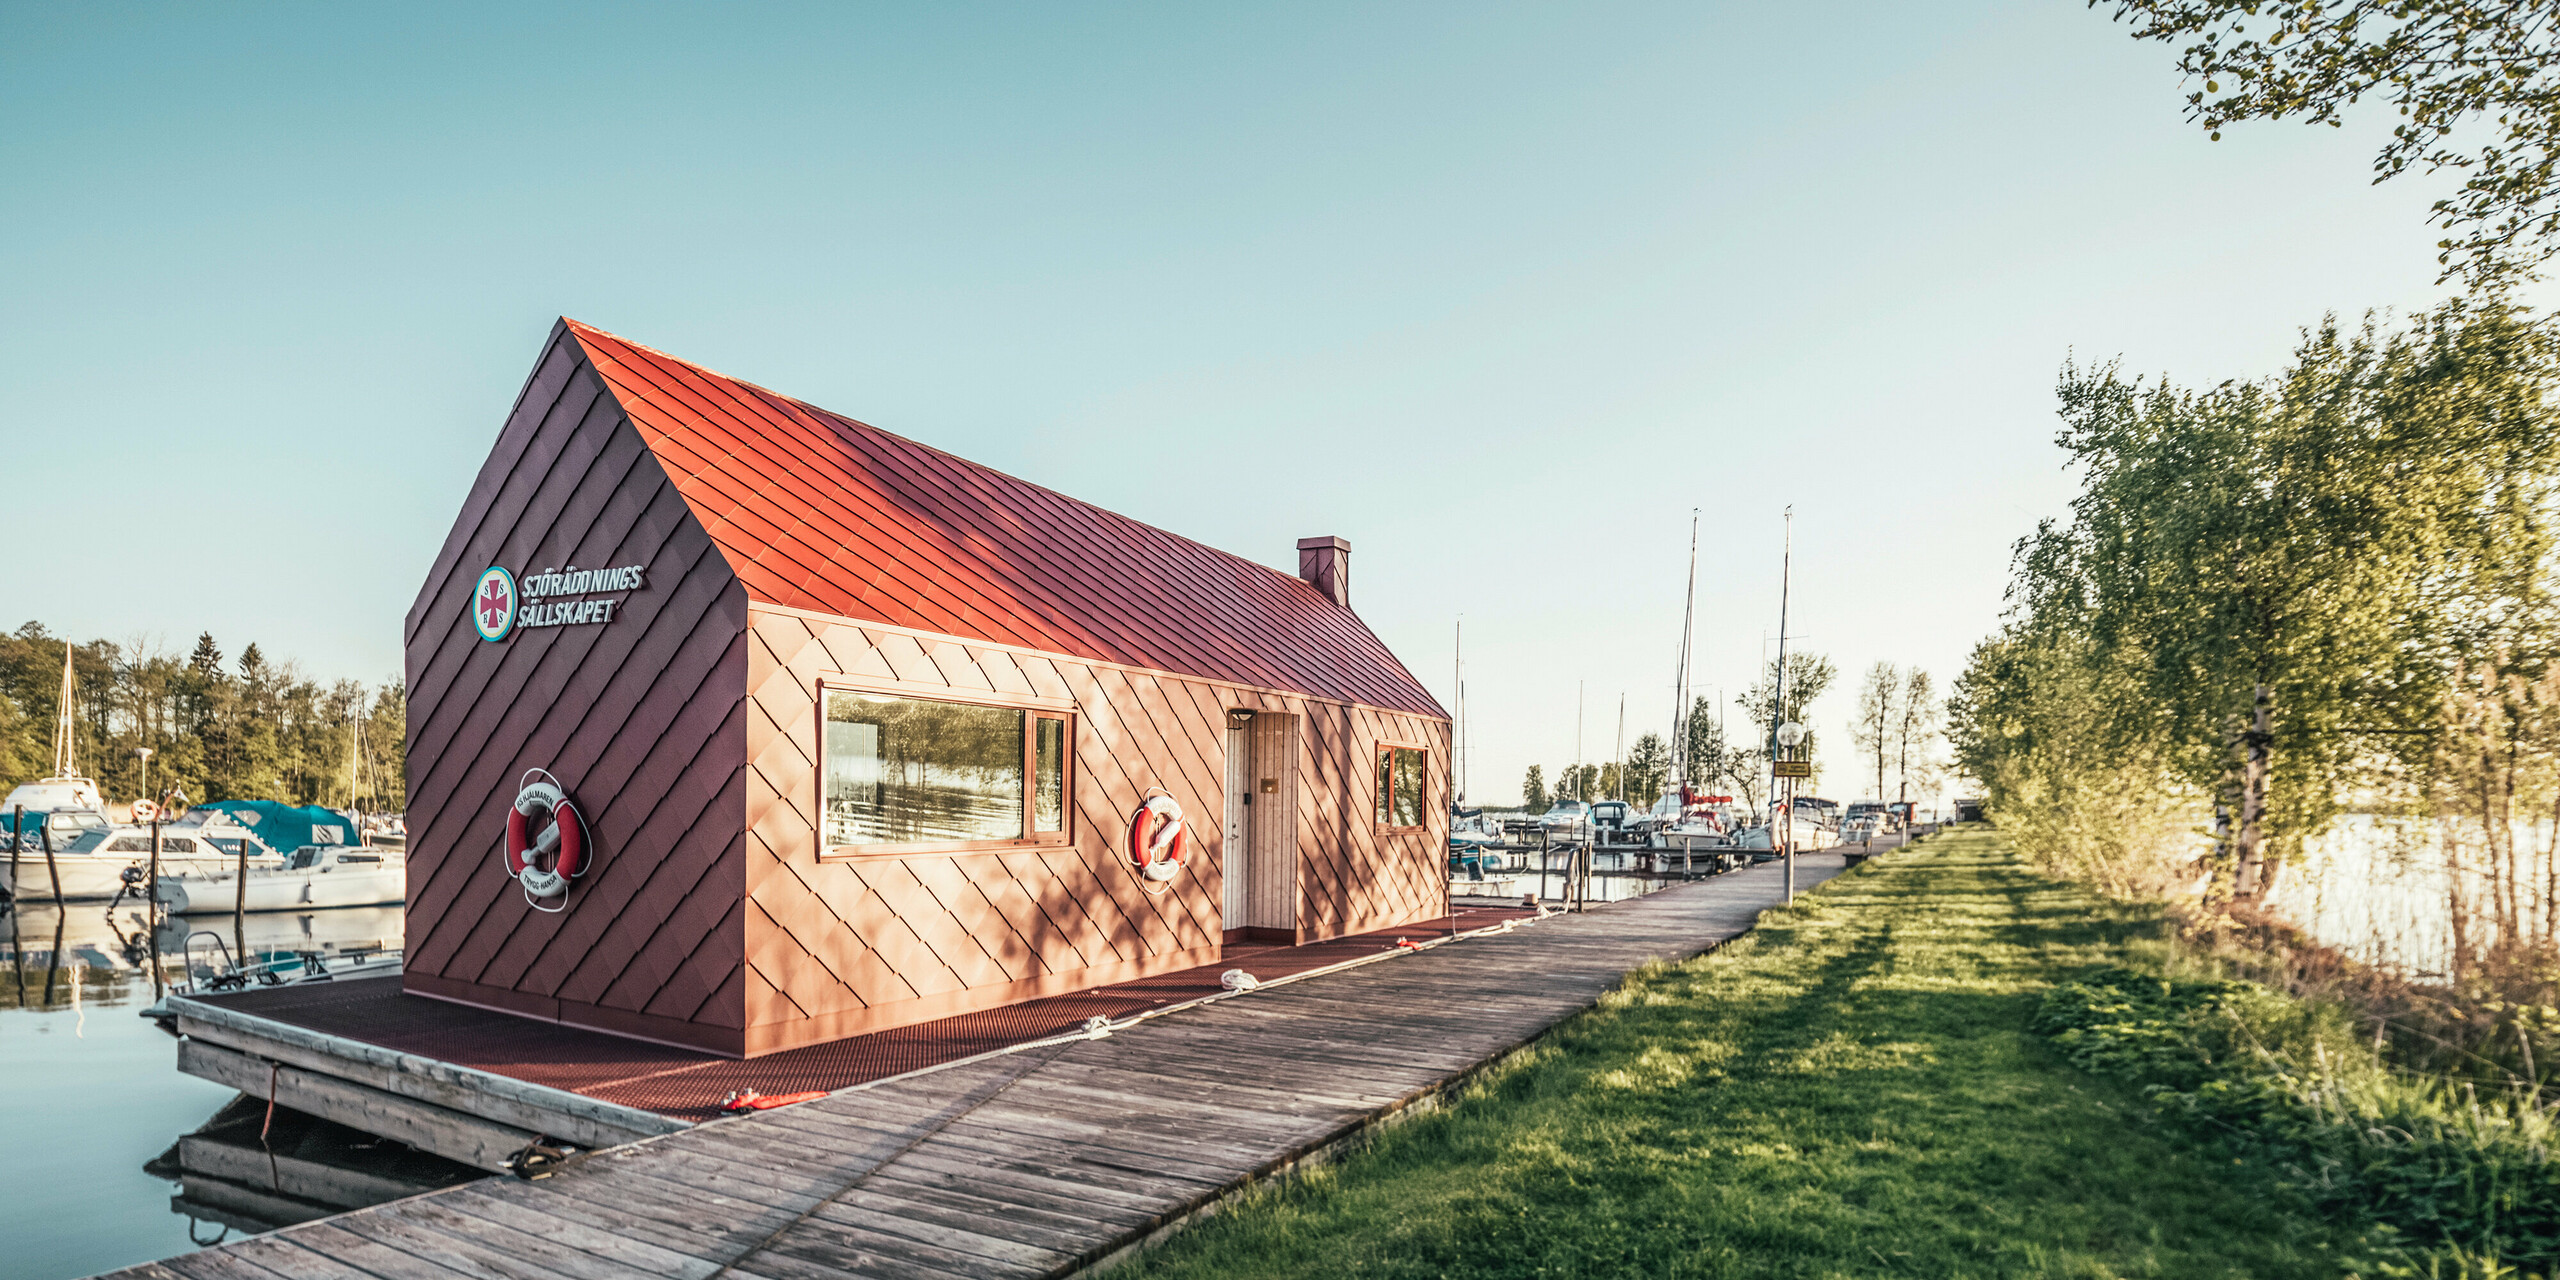 Seenotrettungsstation in harmonischer Umgebung am Hjälmaren See in Schweden, mit einem oxydroten PREFA Dach und Fassadenruten 29×29. Die Station liegt am Ende eines Holzstegs, der in einen Yachthafen führt, wo Boote sanft auf dem Wasser schaukeln. Grüne Bäume rahmen das Bild, das die ruhige, aber bereitwillige Atmosphäre einer Rettungsstation bei goldenem Morgenlicht einfängt.